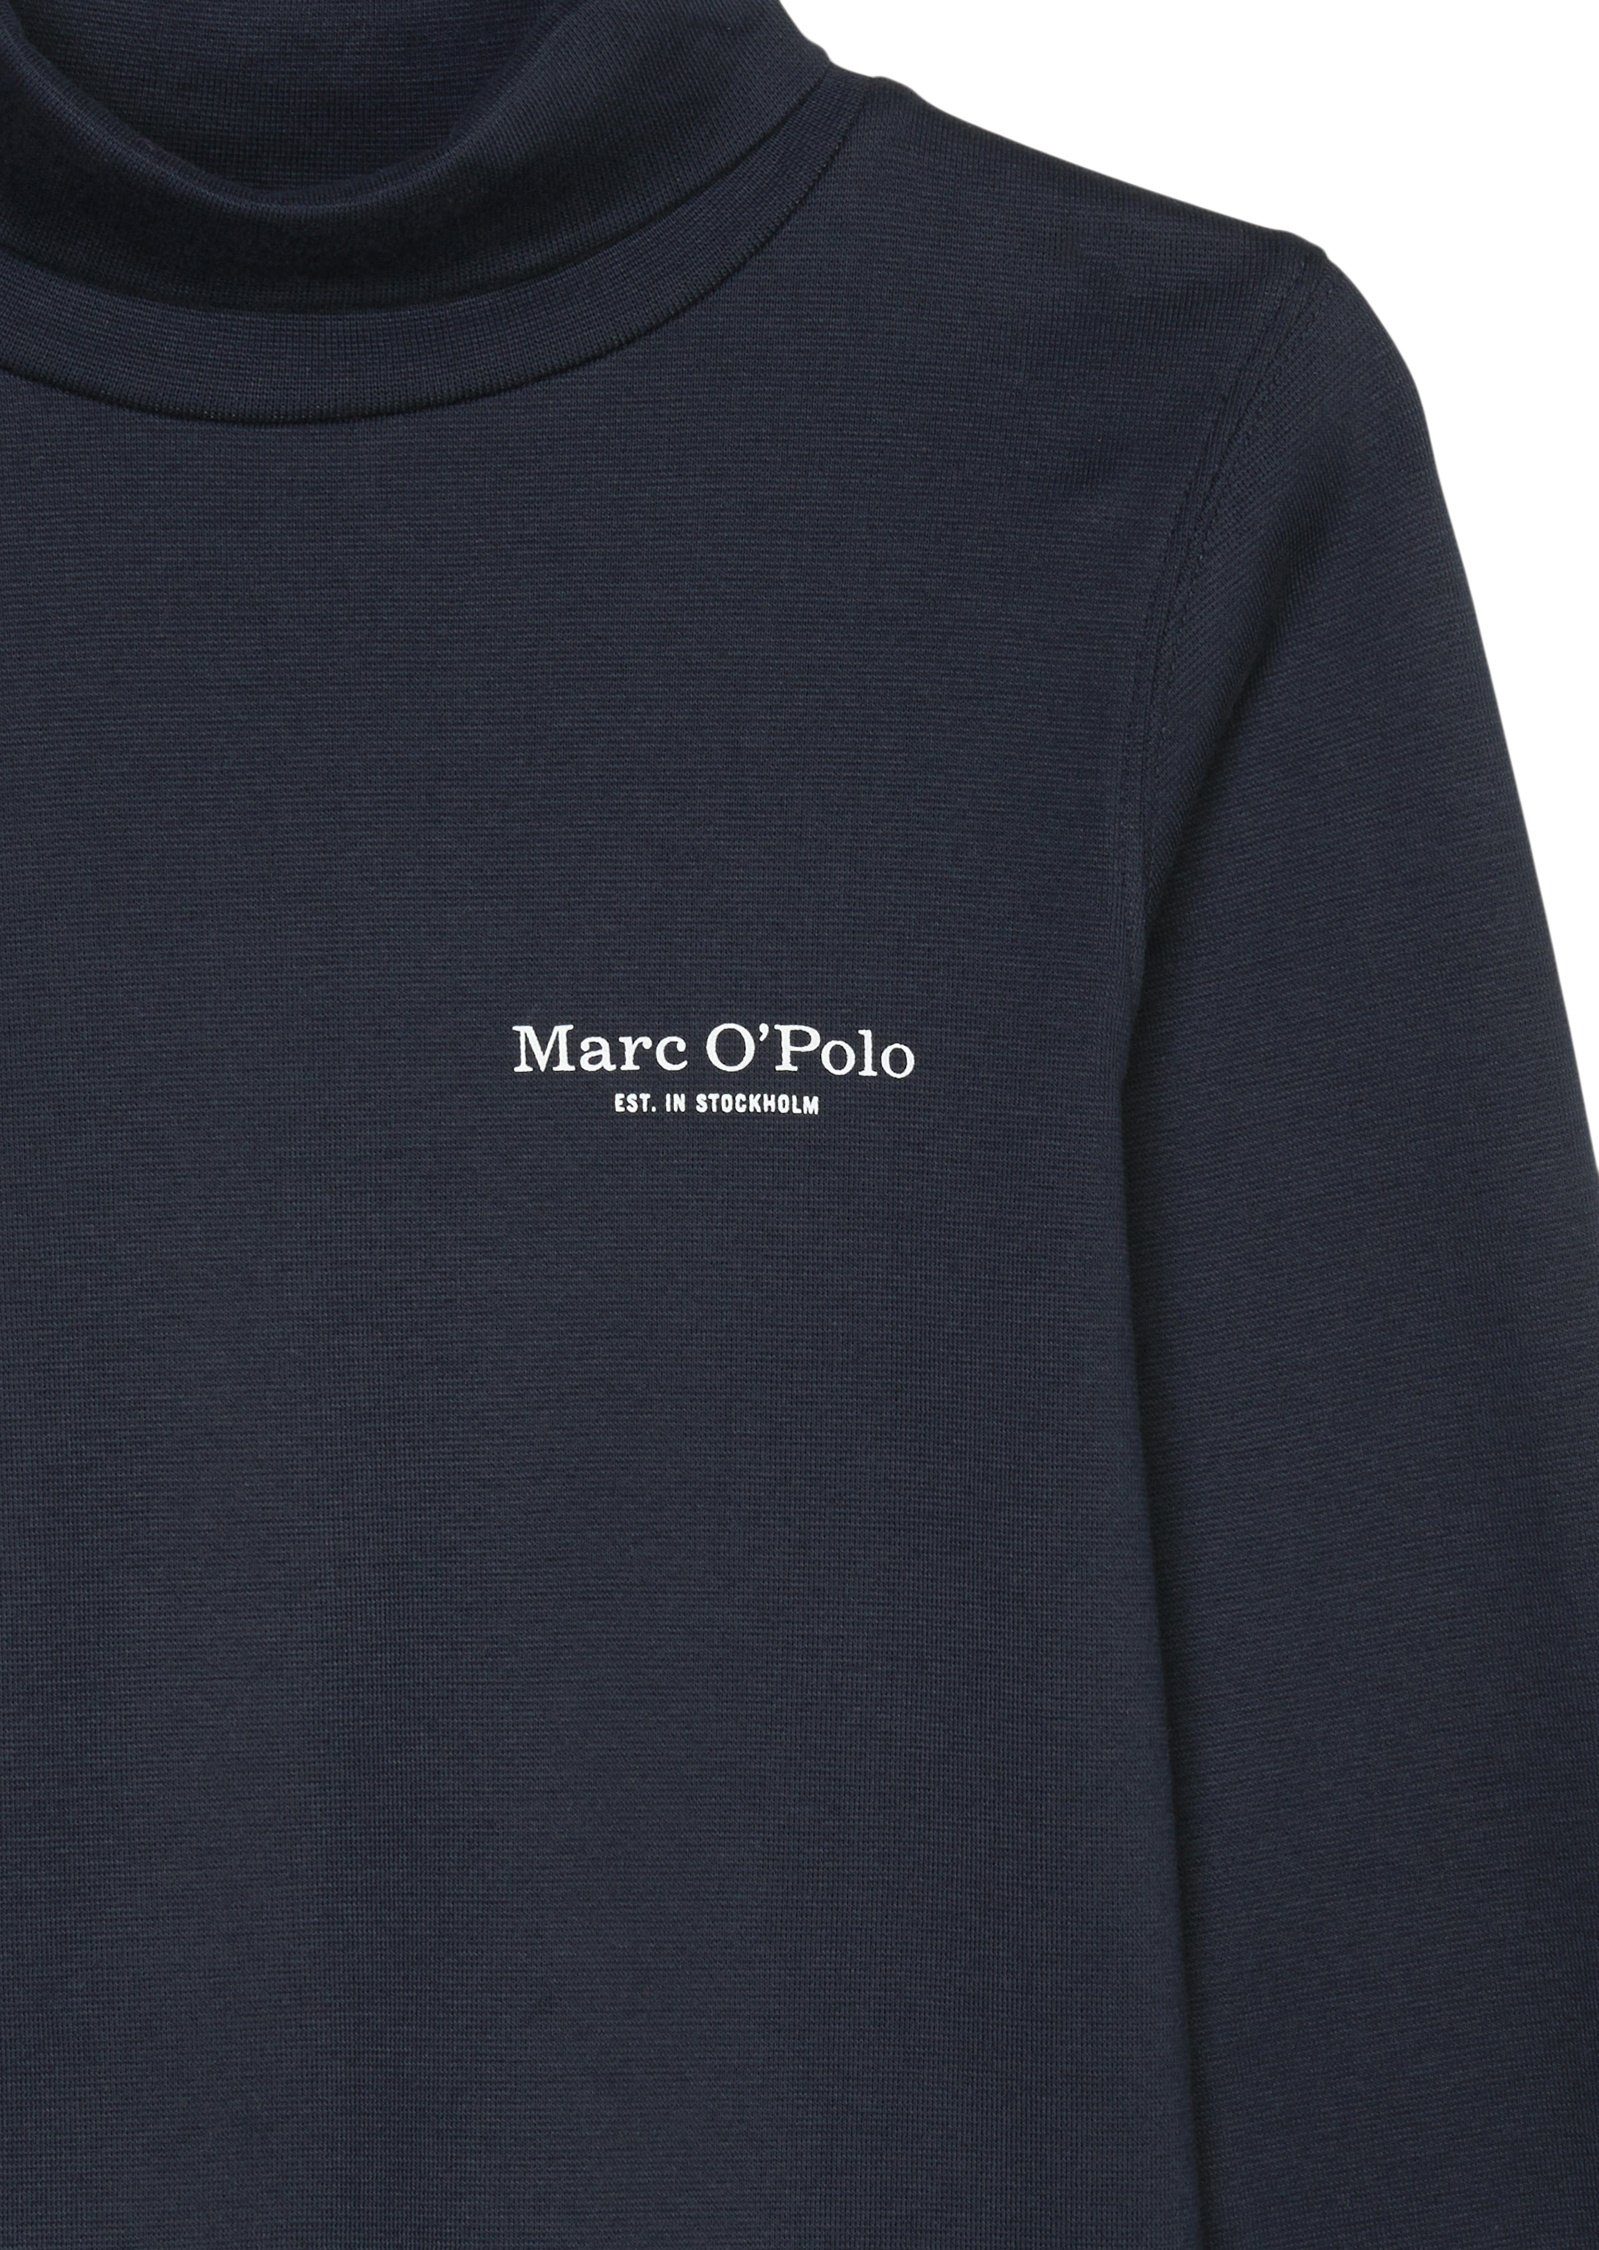 Marc O'Polo Langarmshirt schmalen Fit blau im